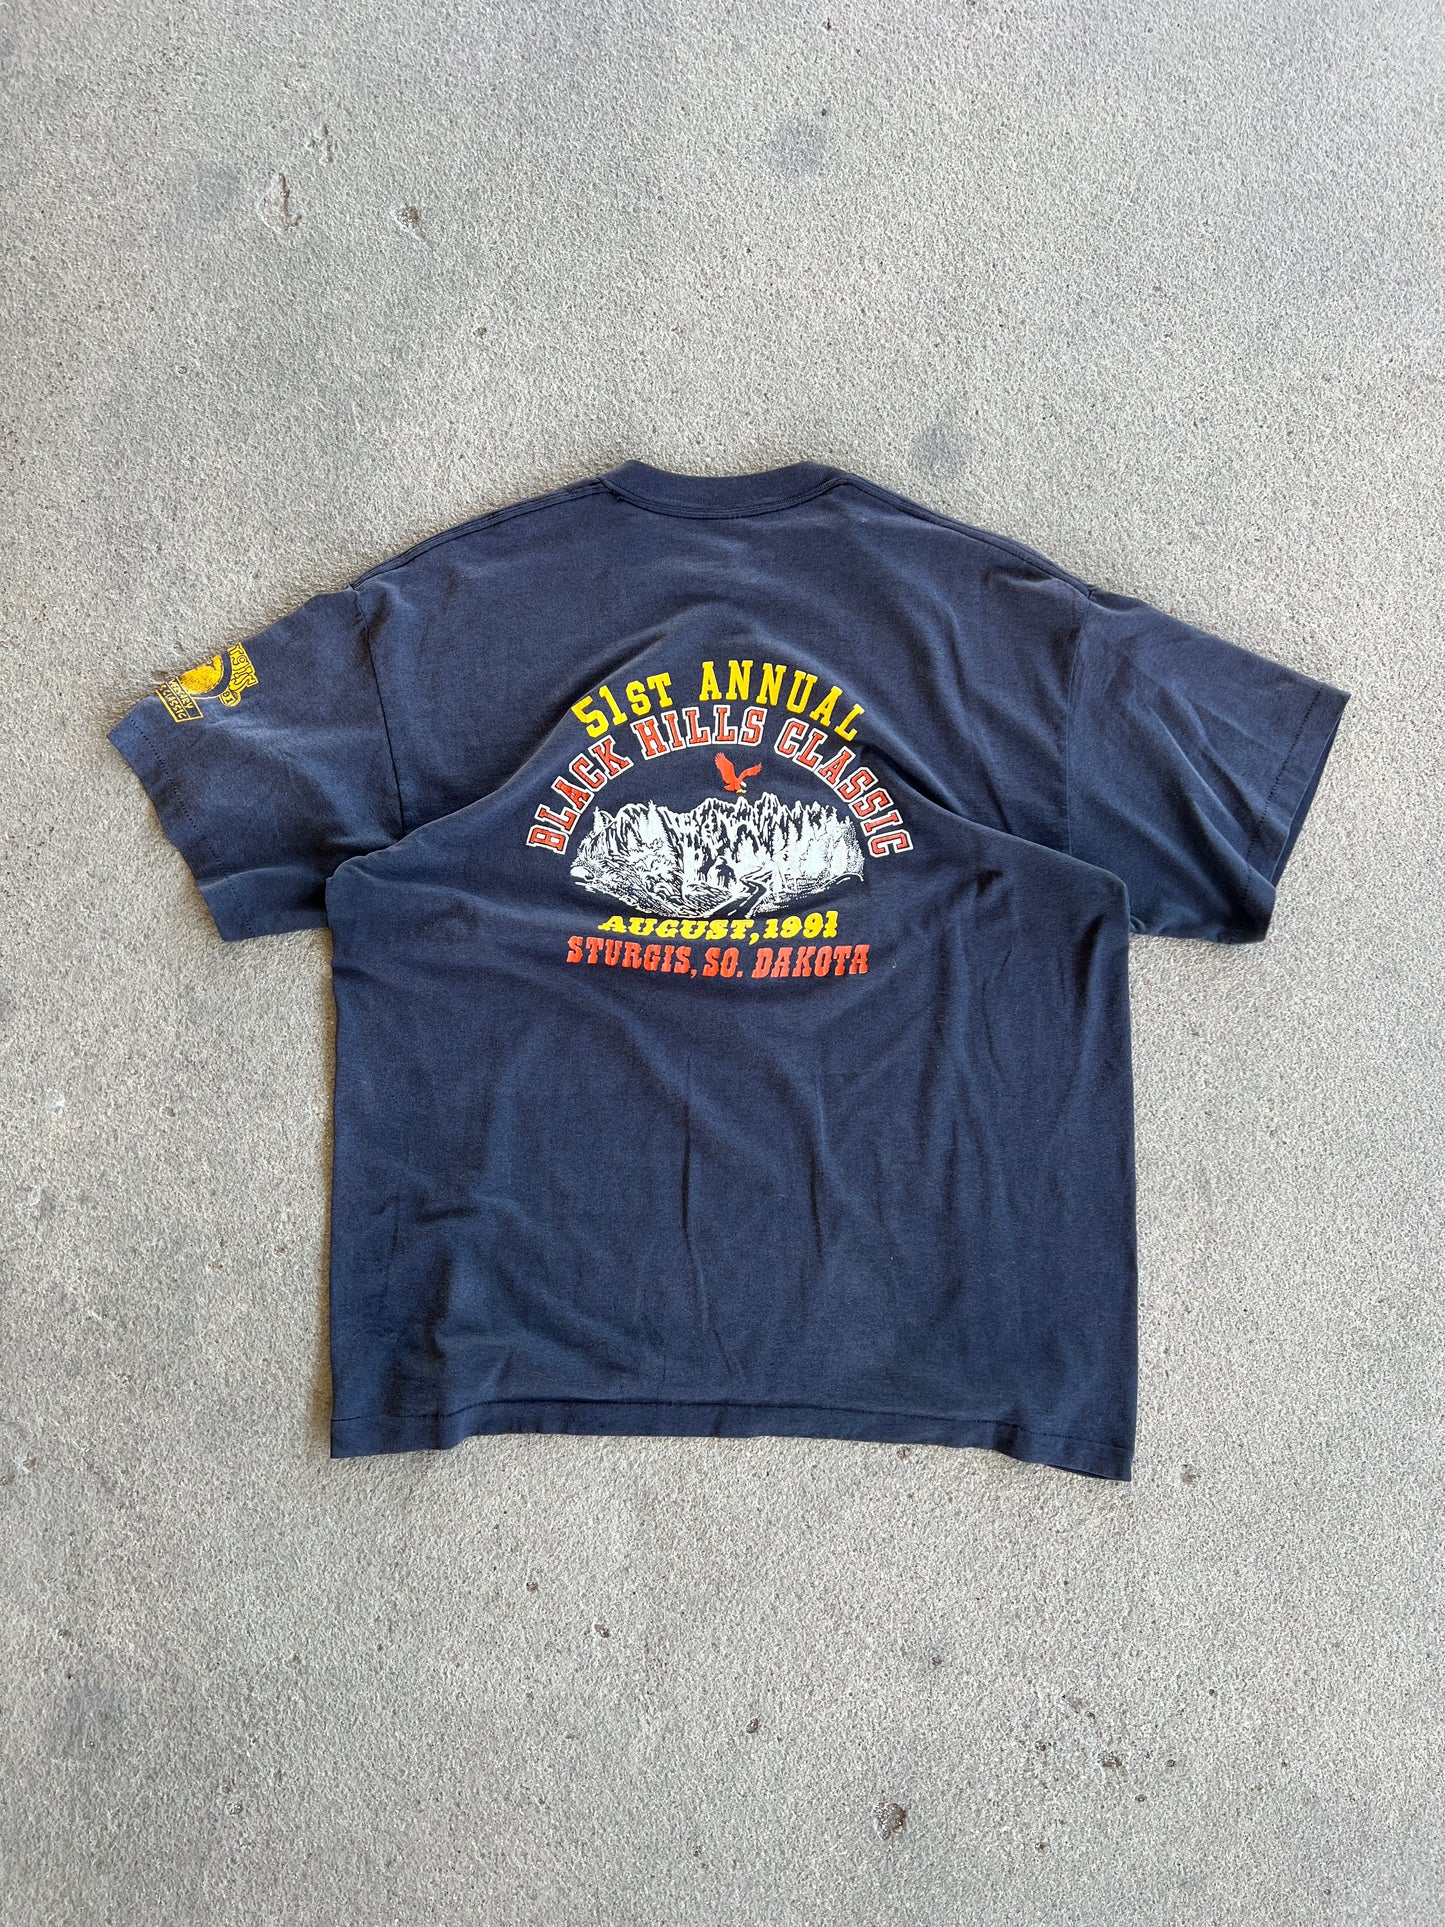 Vintage Black Hills Rally Shirt - XL